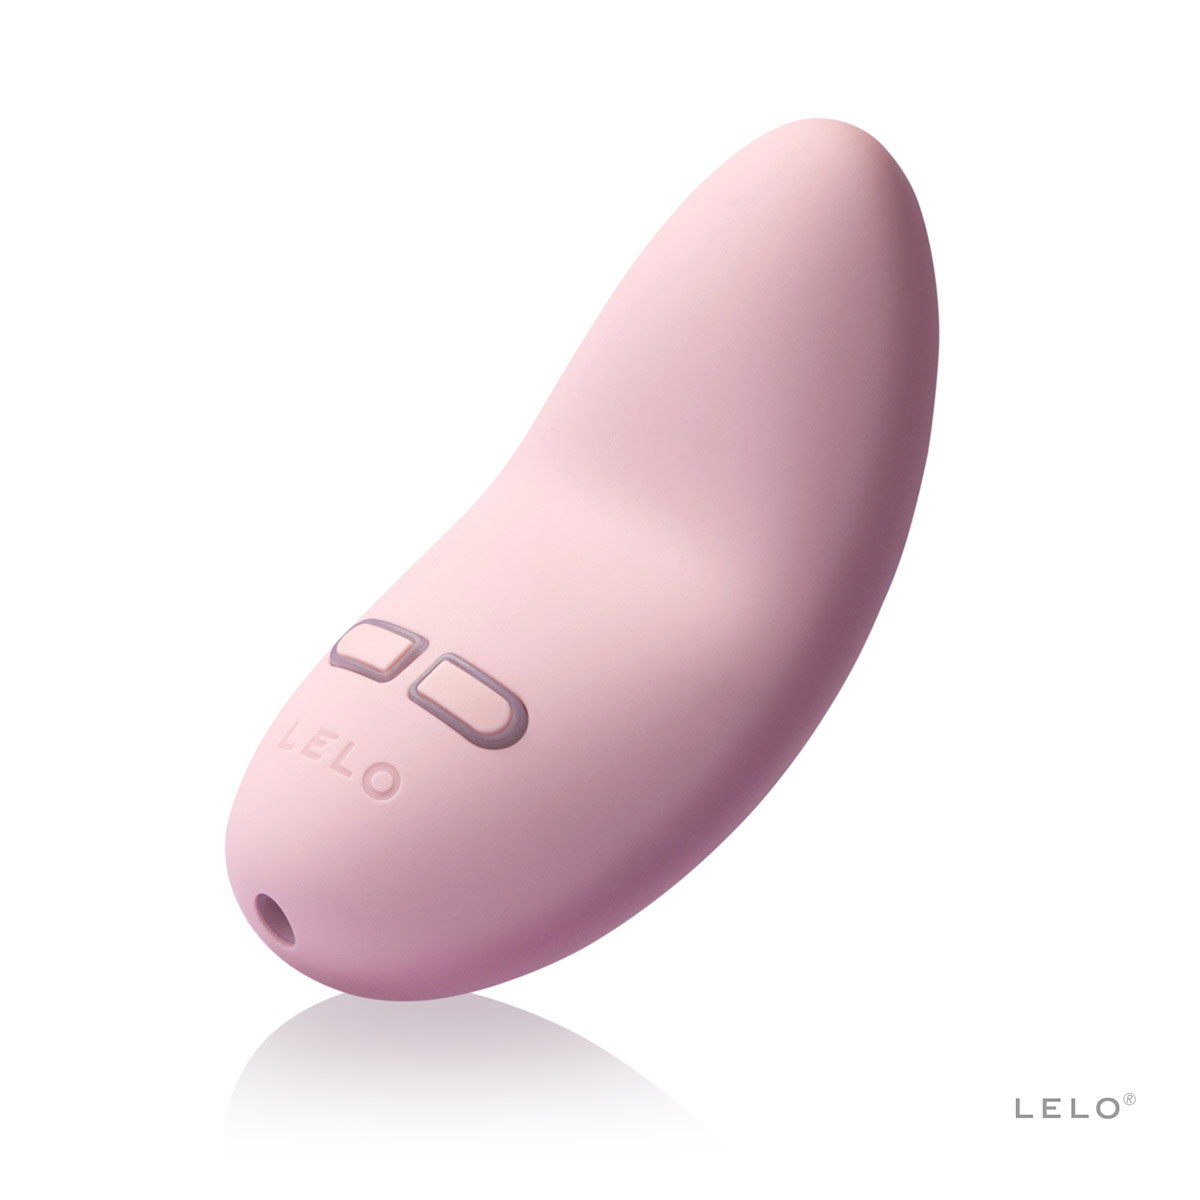 Lelo Lily 2 Pink - вибратор для клитора с ароматом розы и глицинии, 7.6 см - фото 1